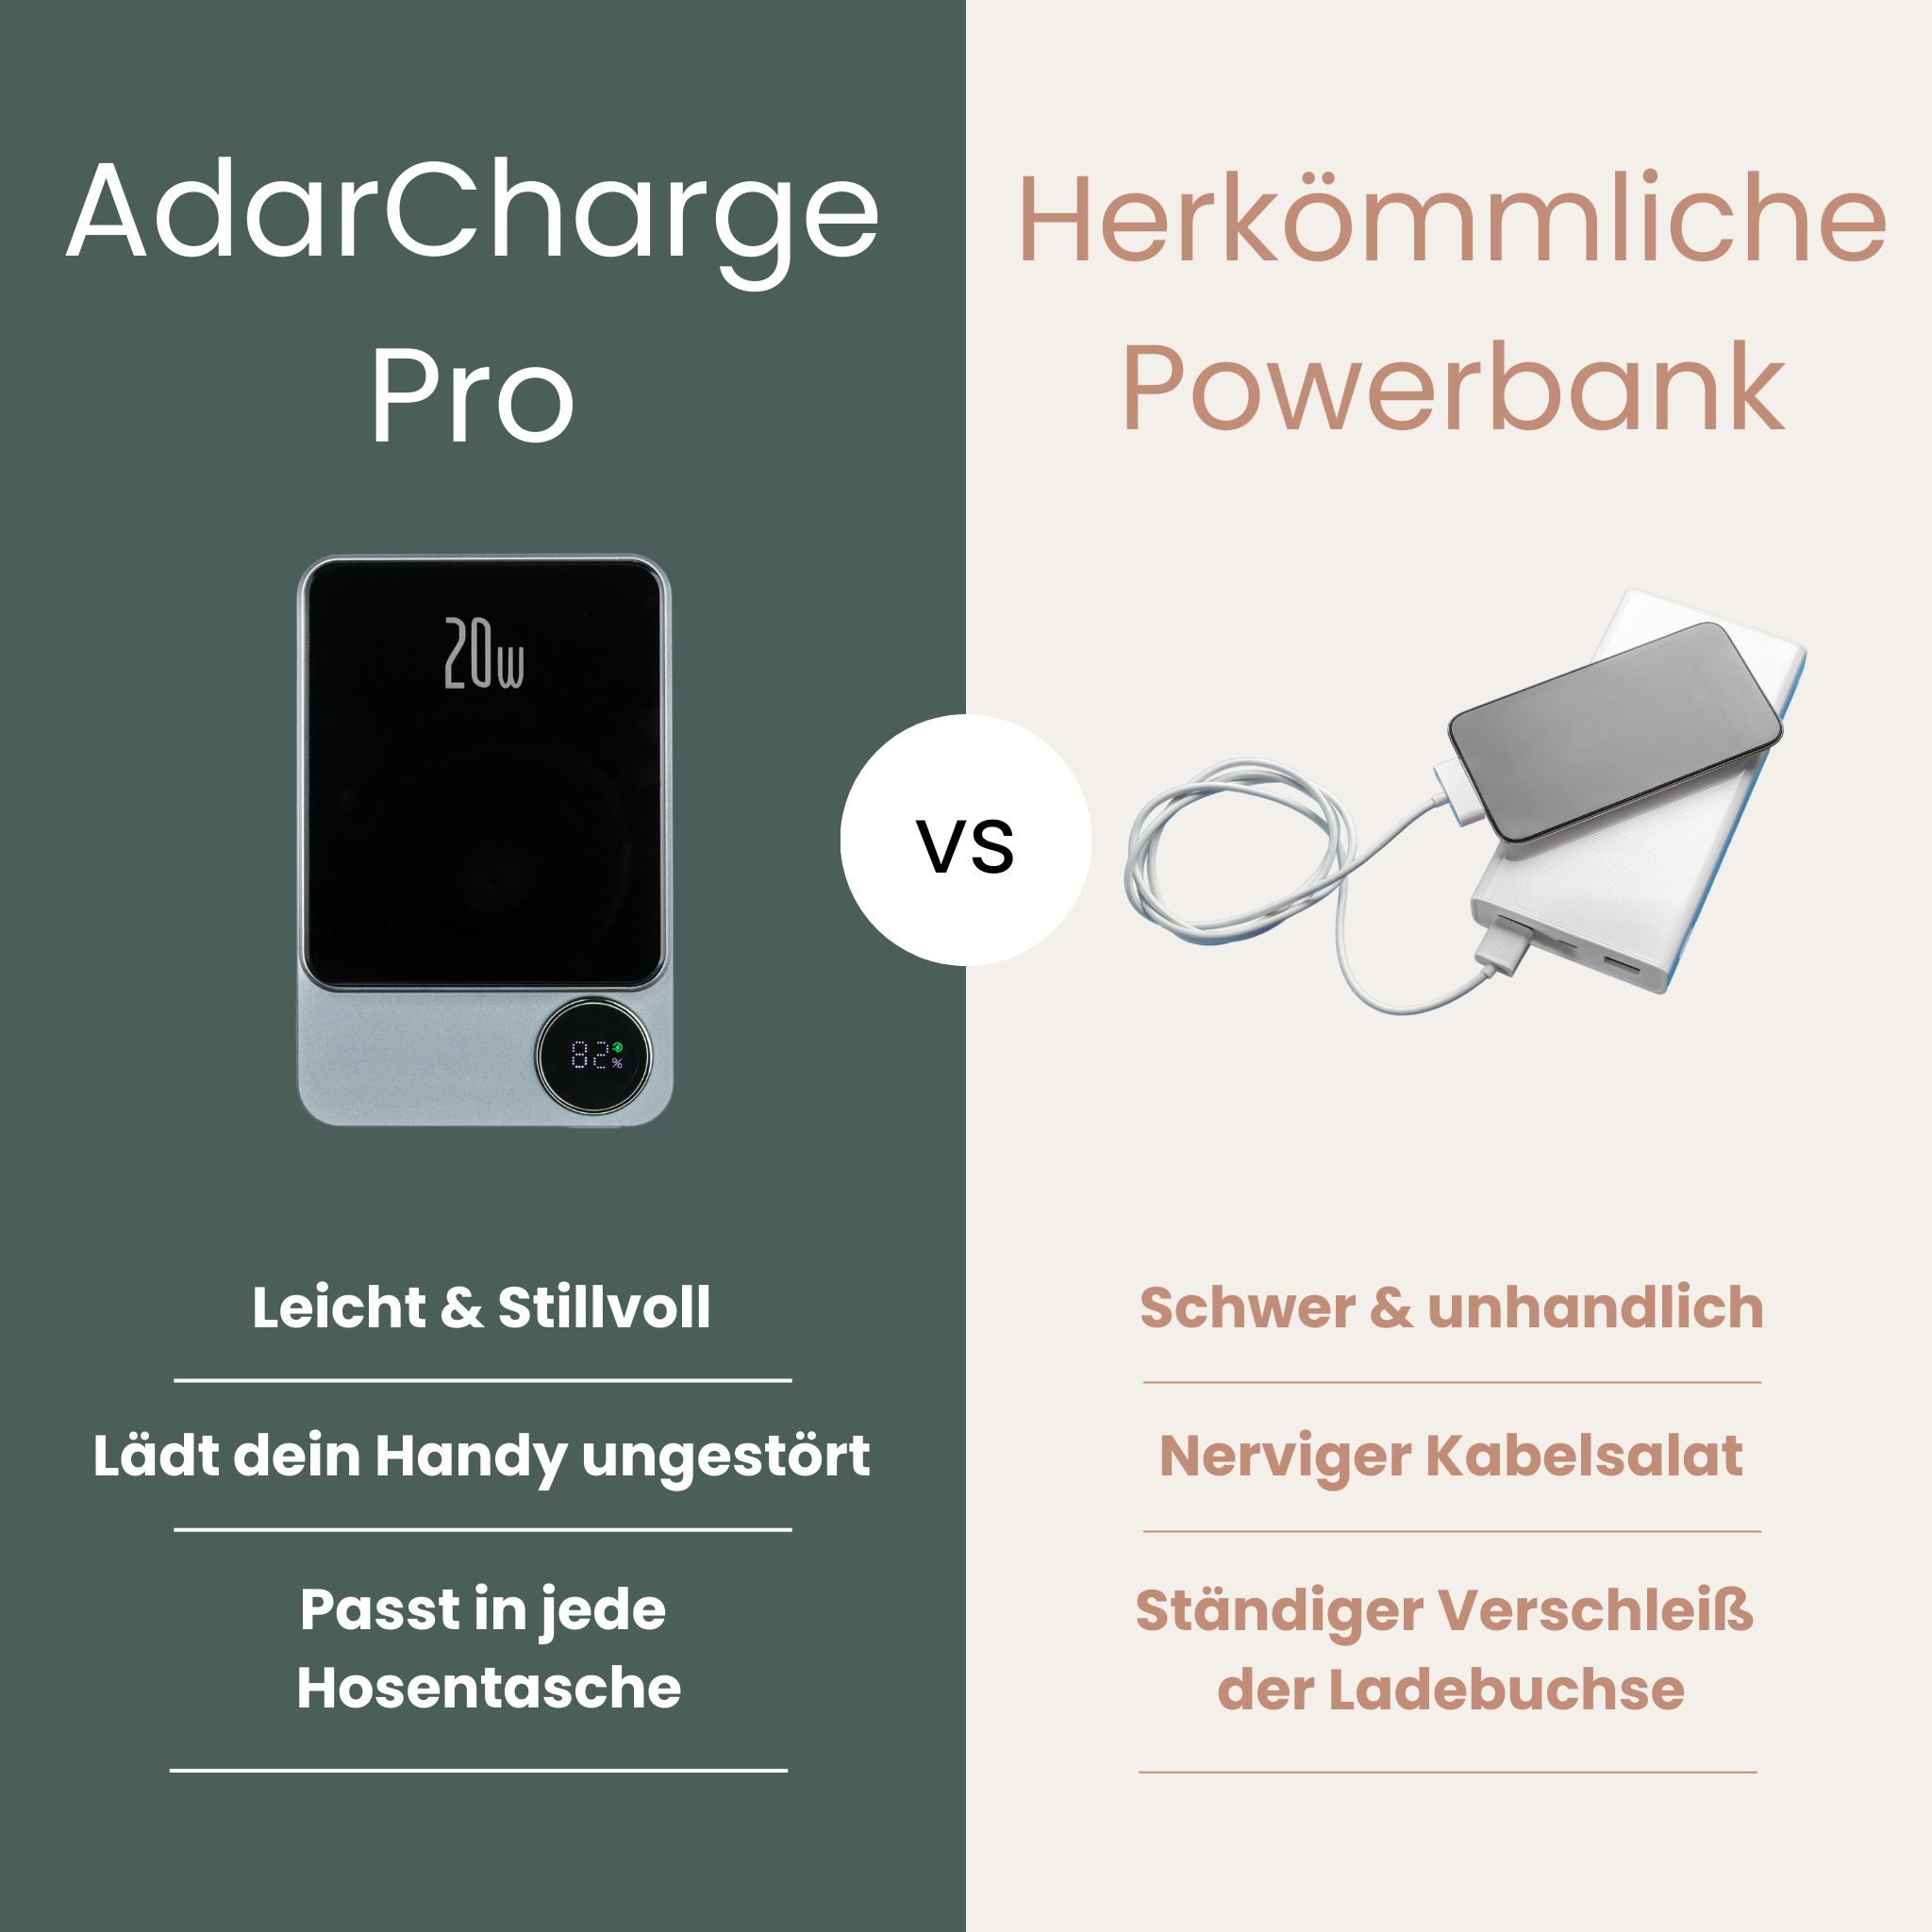 AdarCharge Pro - Magnetische PowerBank